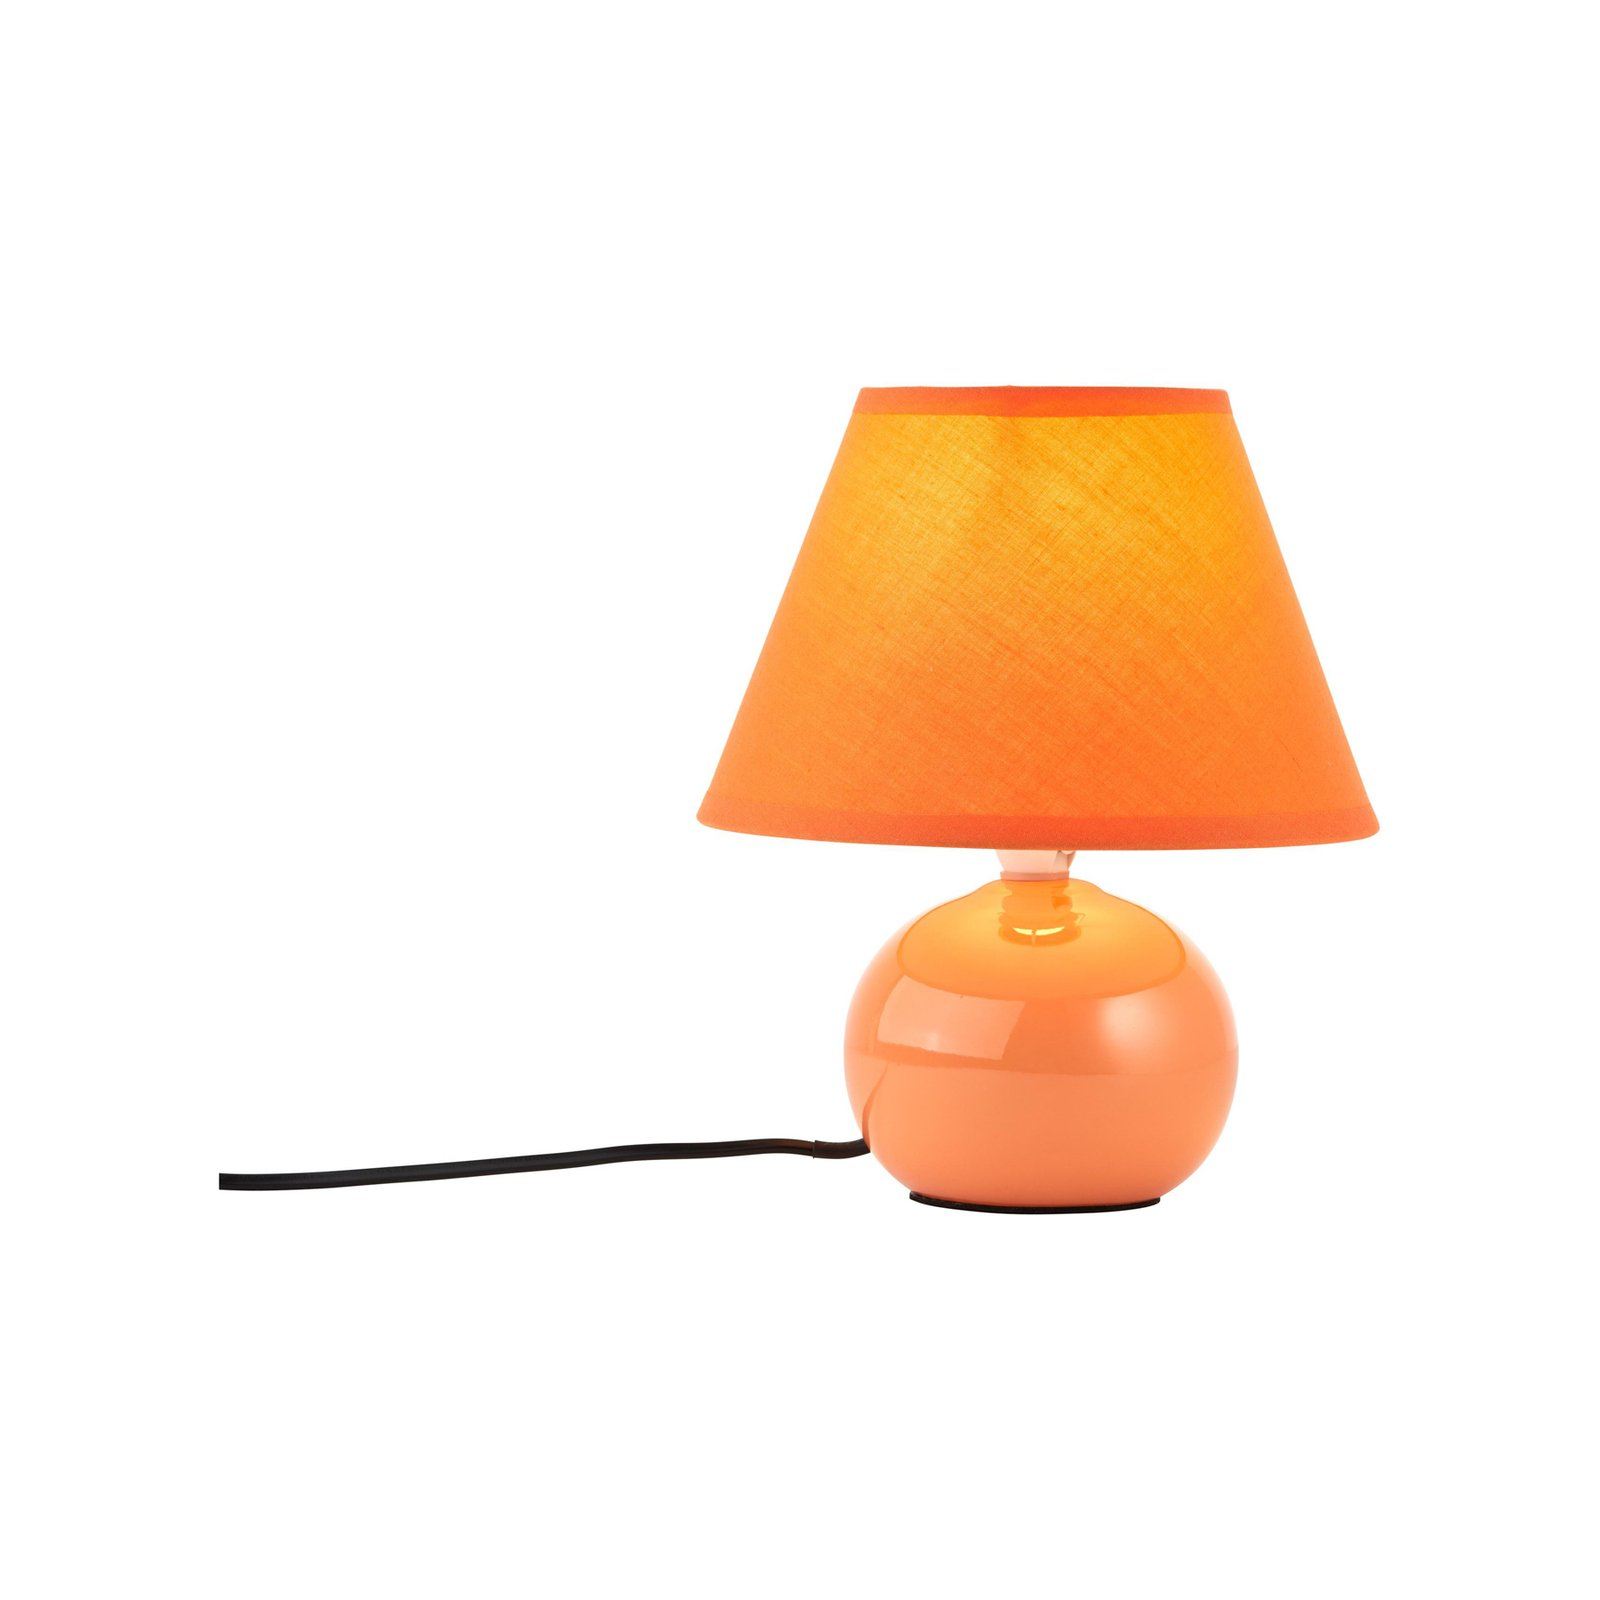 Tischlampe Primo, orange, Ø 19 cm, Textil/Keramik